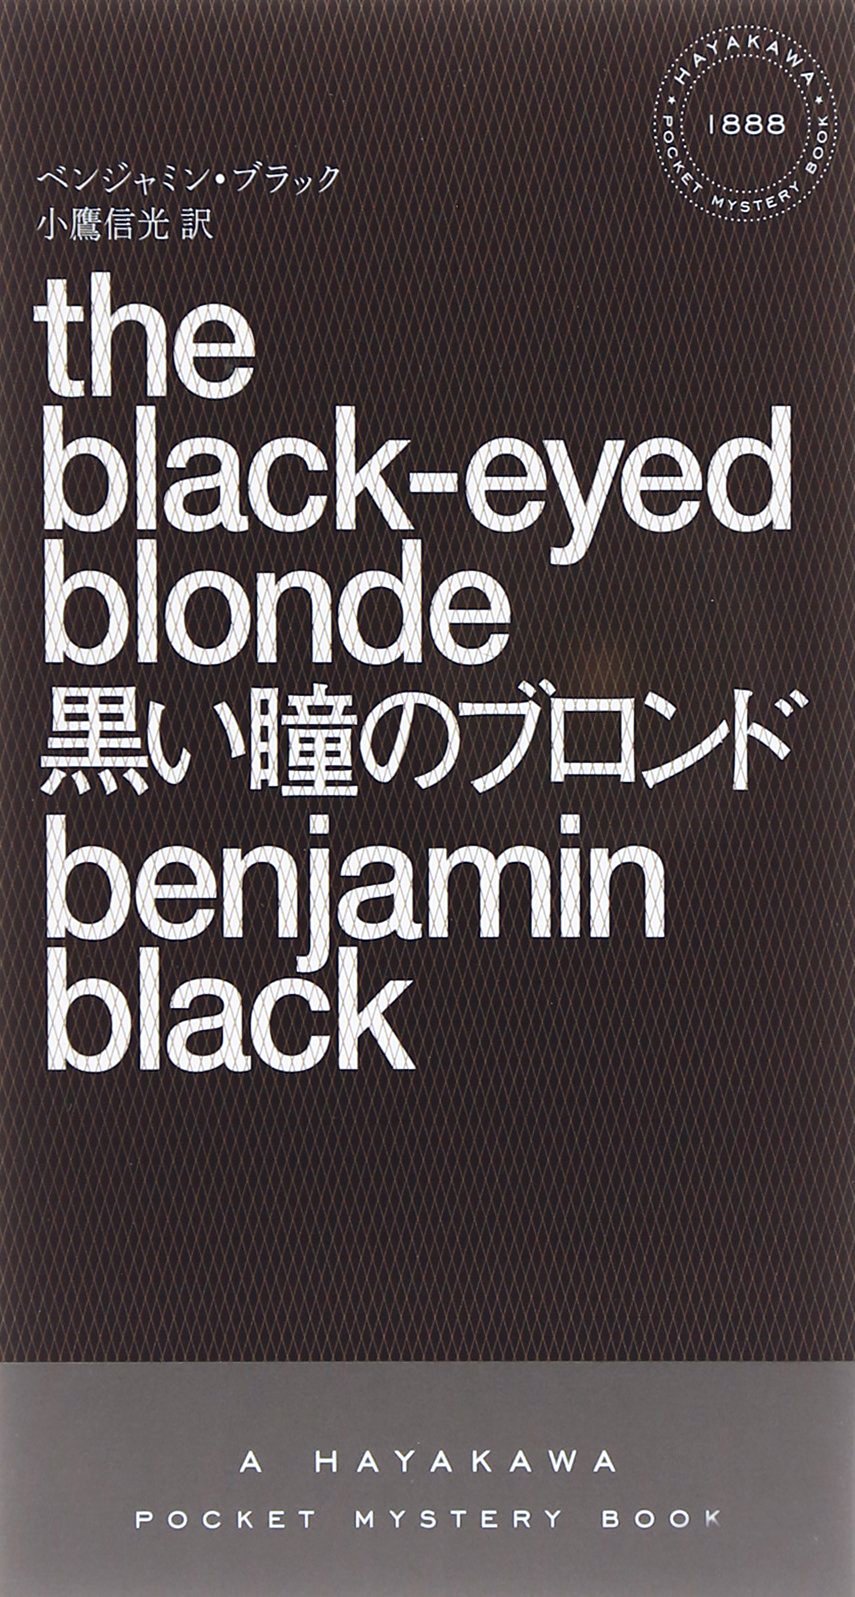 ブッカー賞作家が書いた「フィリップ・マーロウ」シリーズ『黒い瞳のブロンド』